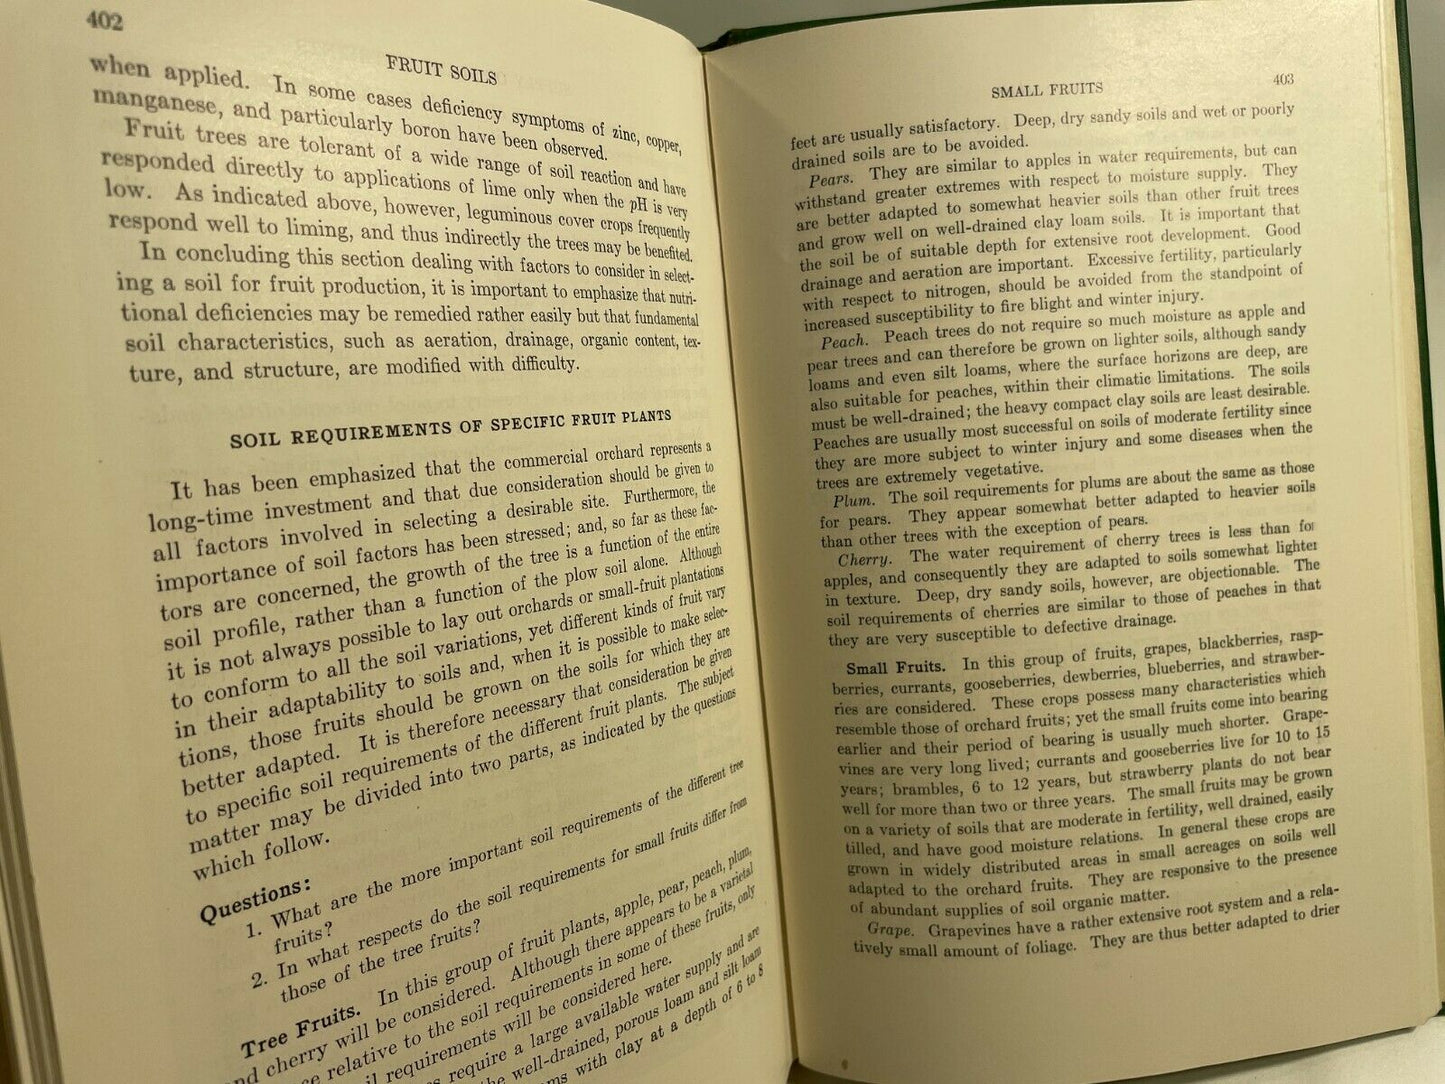 Fundamentals of Soil Science C. Ernest Millar & Lloyd Turk 8th Printing 1949